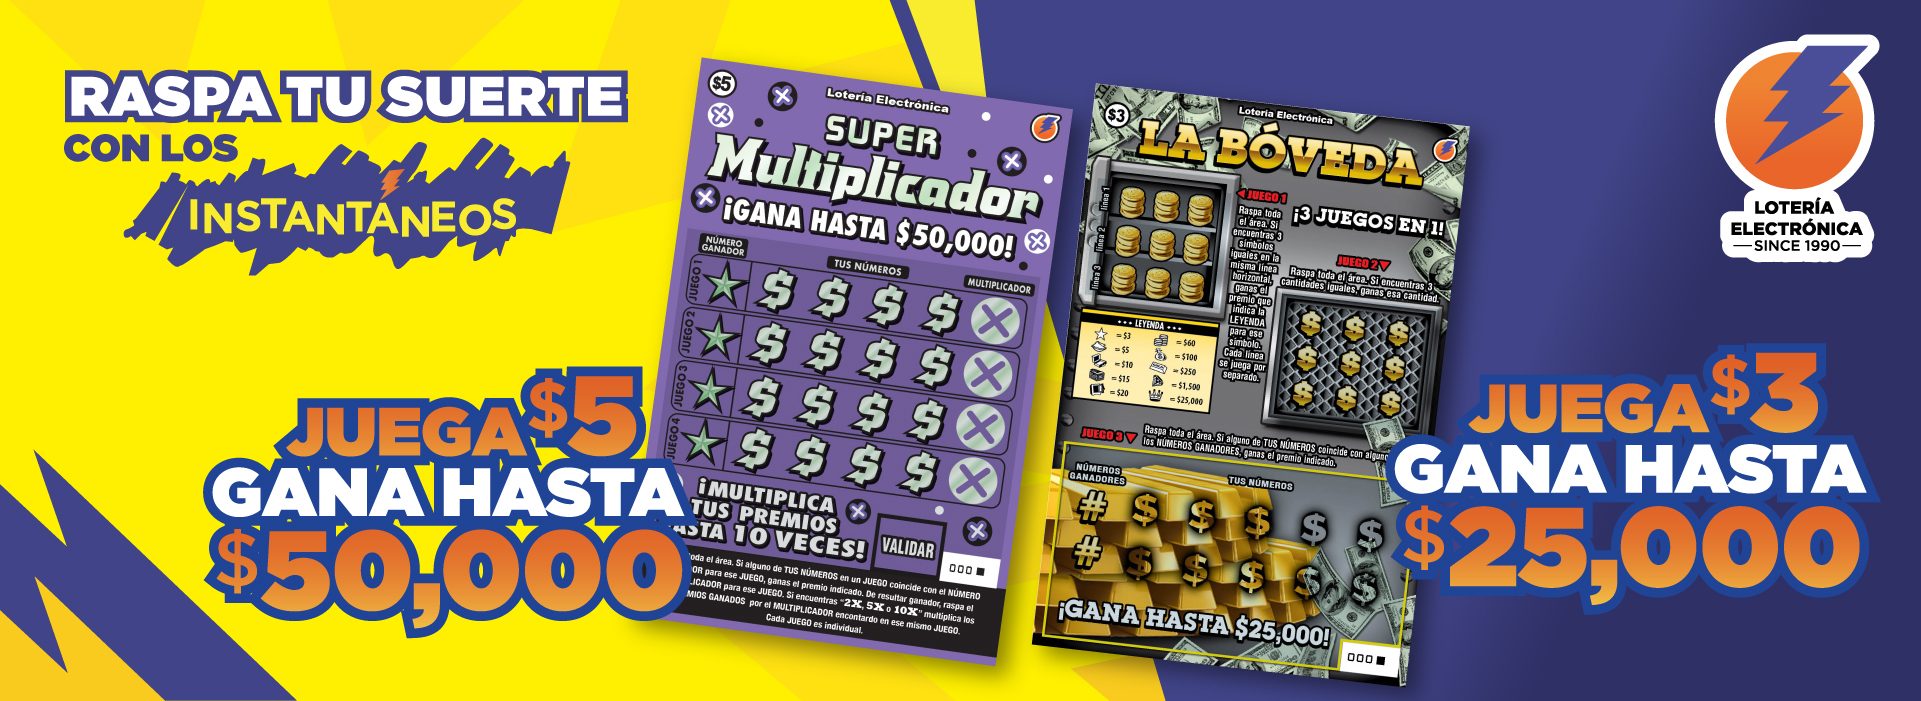 loteria electronica de puerto rico